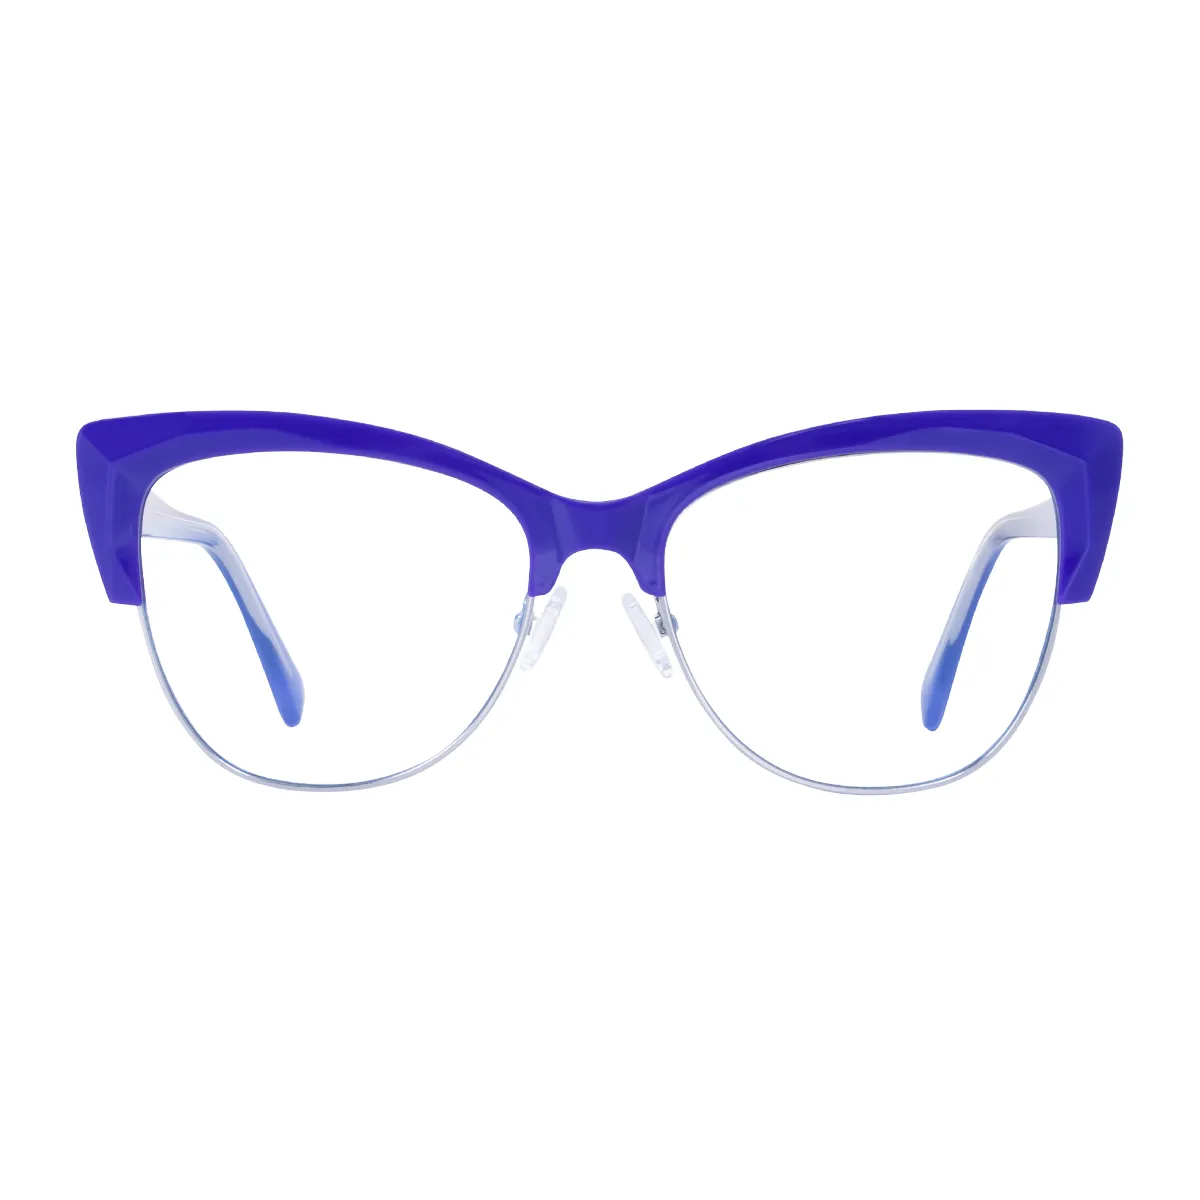 Kitty - glasses Purple Glasses for Women